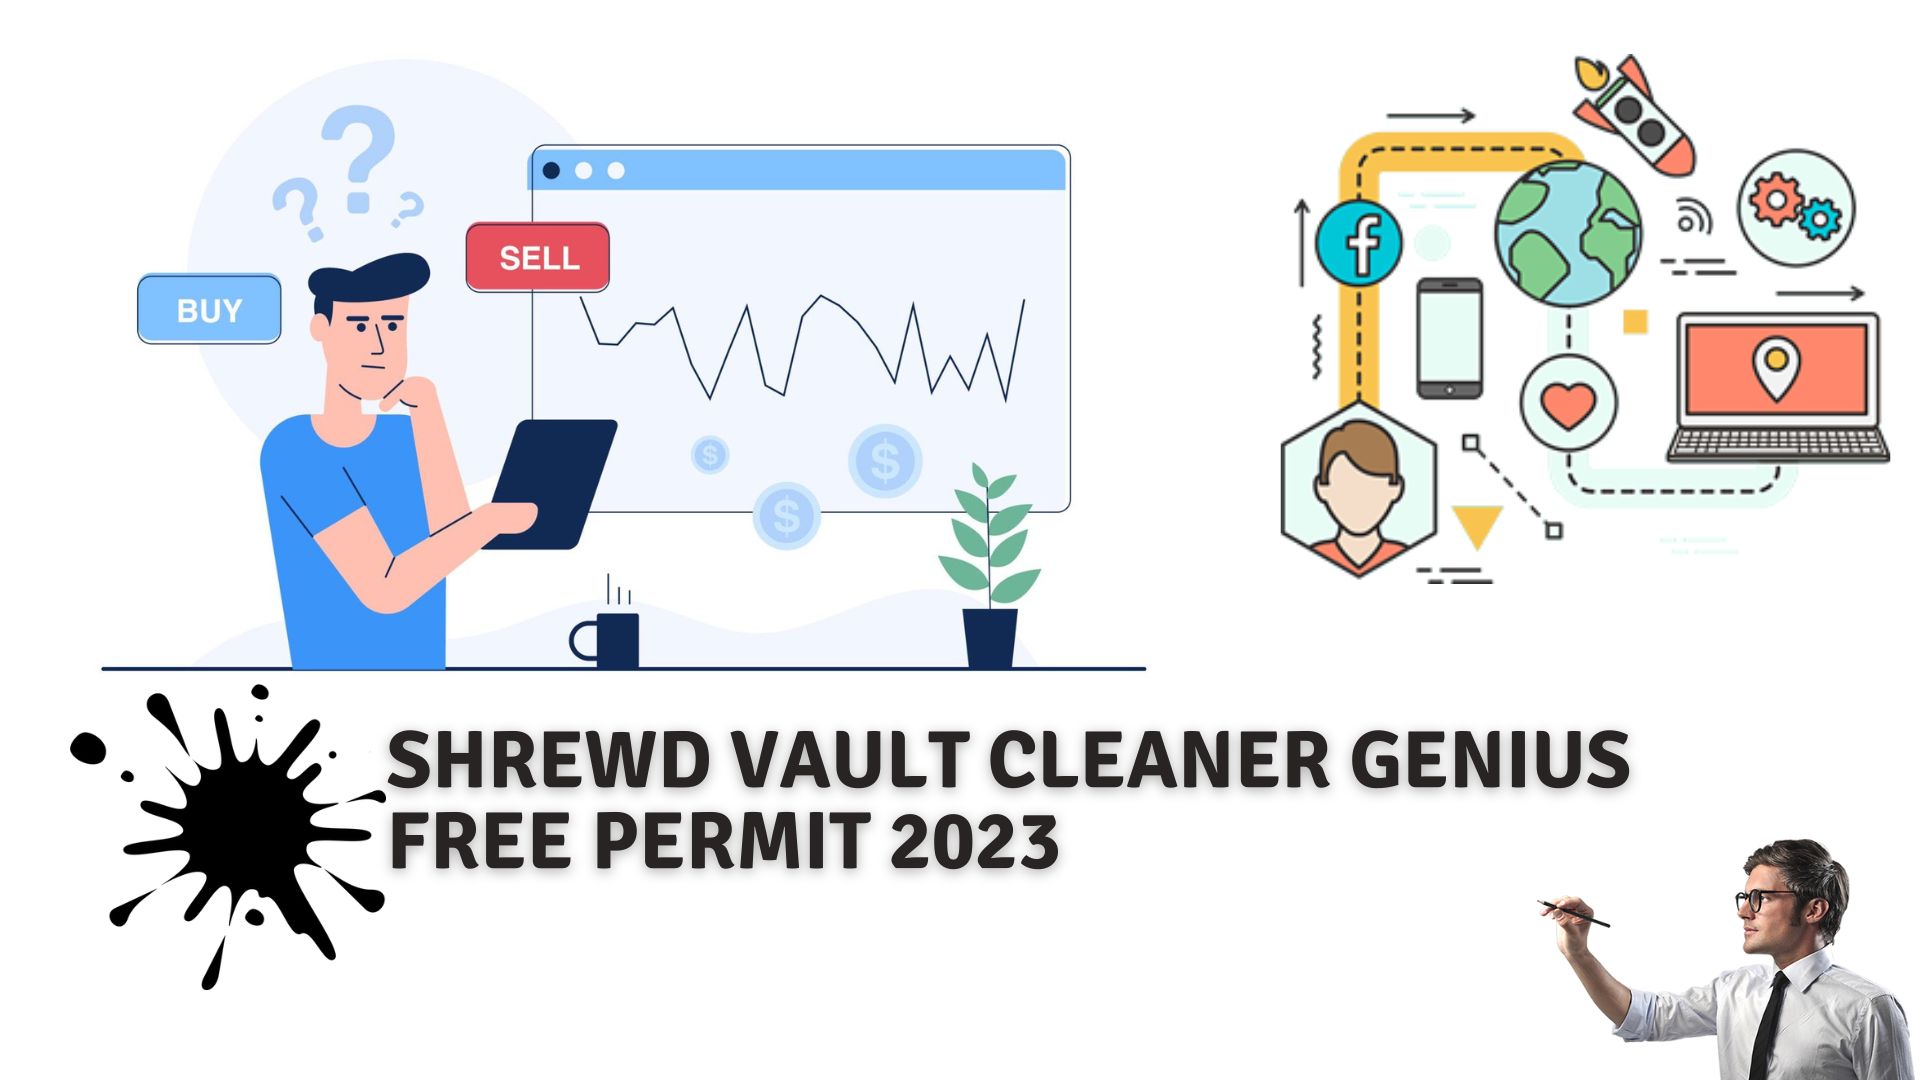 Shrewd vault cleaner genius free permit 2023